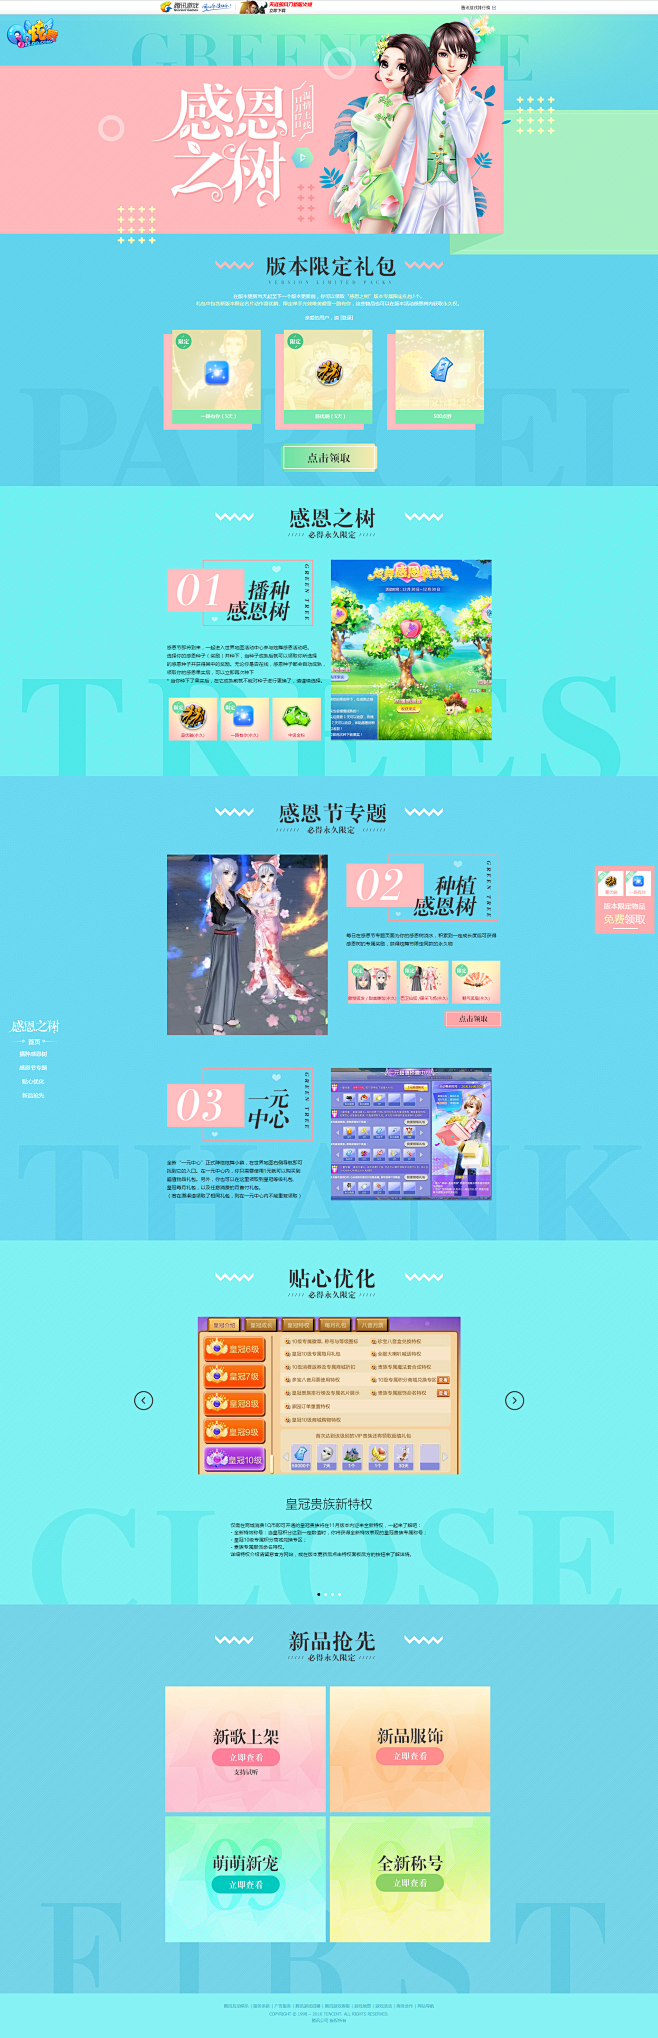 感恩之树-QQ炫舞官方网站-腾讯游戏